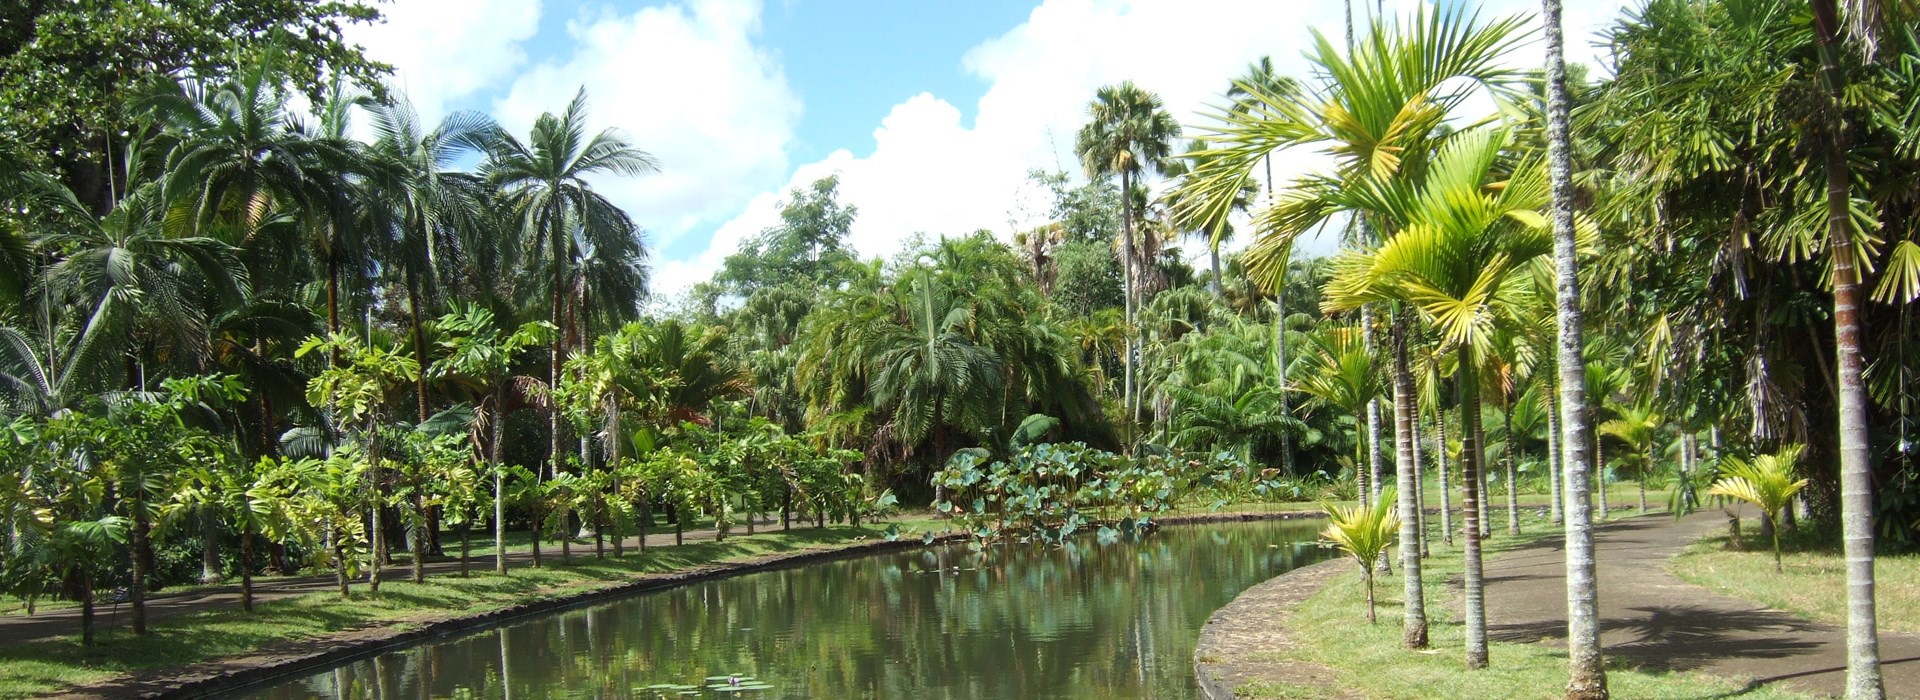 Visiter Le jardin des Pamplemousses - Ile Maurice